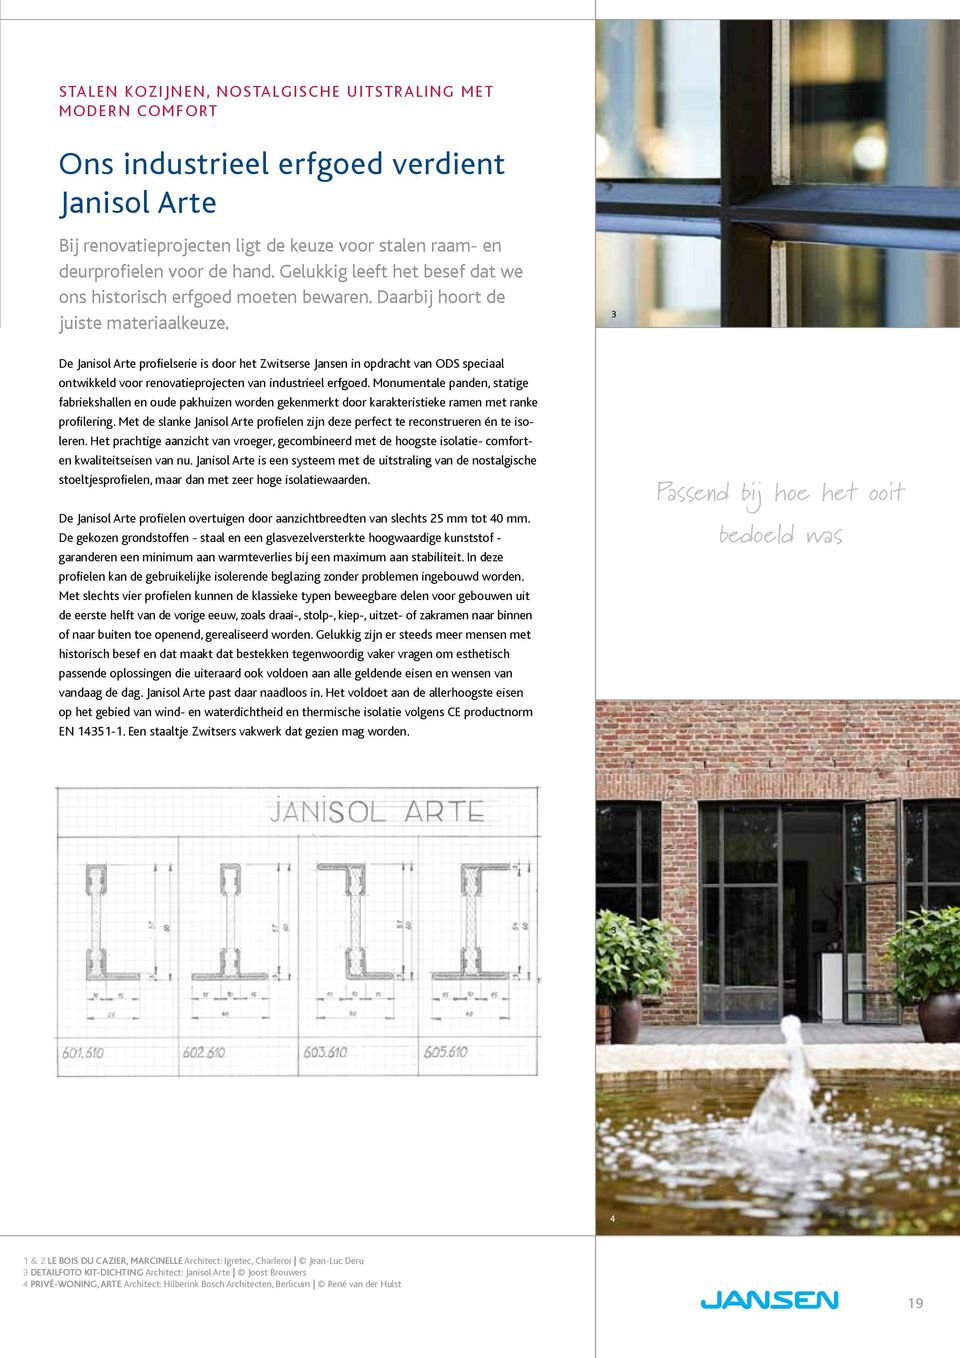 3 De Janisol Arte profielserie is door het Zwitserse Jansen in opdracht van ODS speciaal ontwikkeld voor renovatieprojecten van industrieel erfgoed.